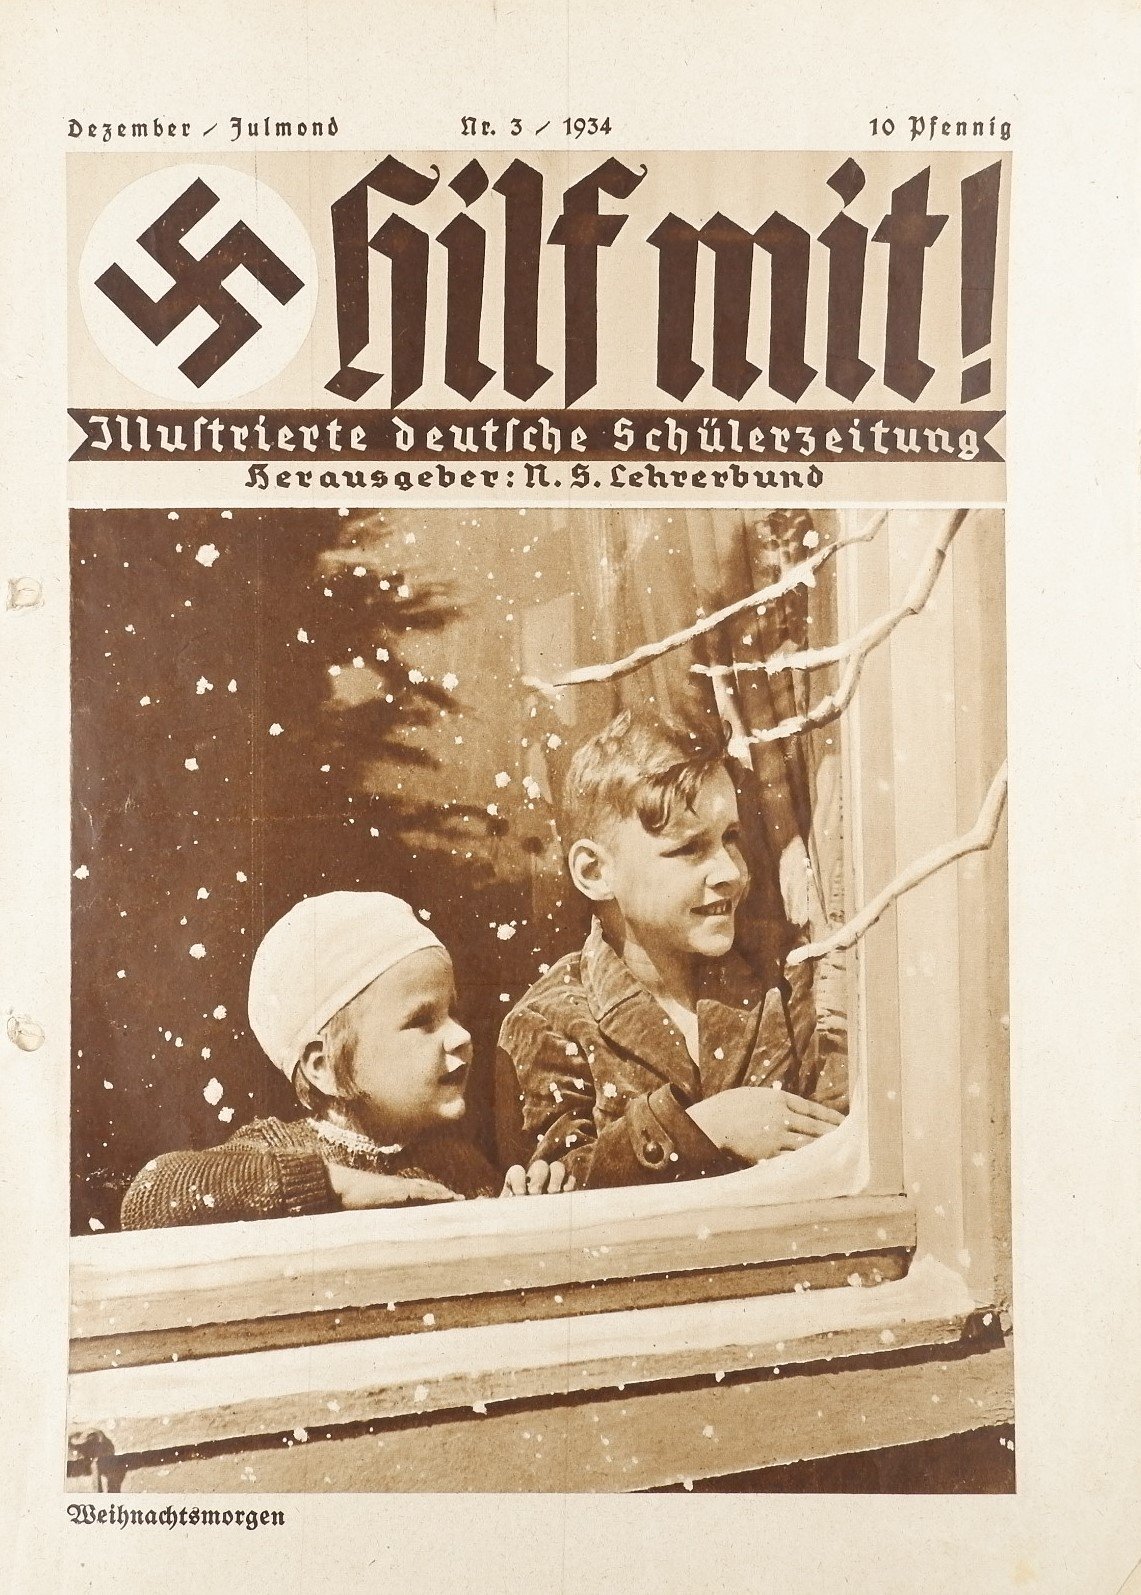 Hilf mit! - Illustrierte deutsche Schülerzeitung 3/1934 (Volkskunde- und Freilichtmuseum Roscheider Hof RR-F)